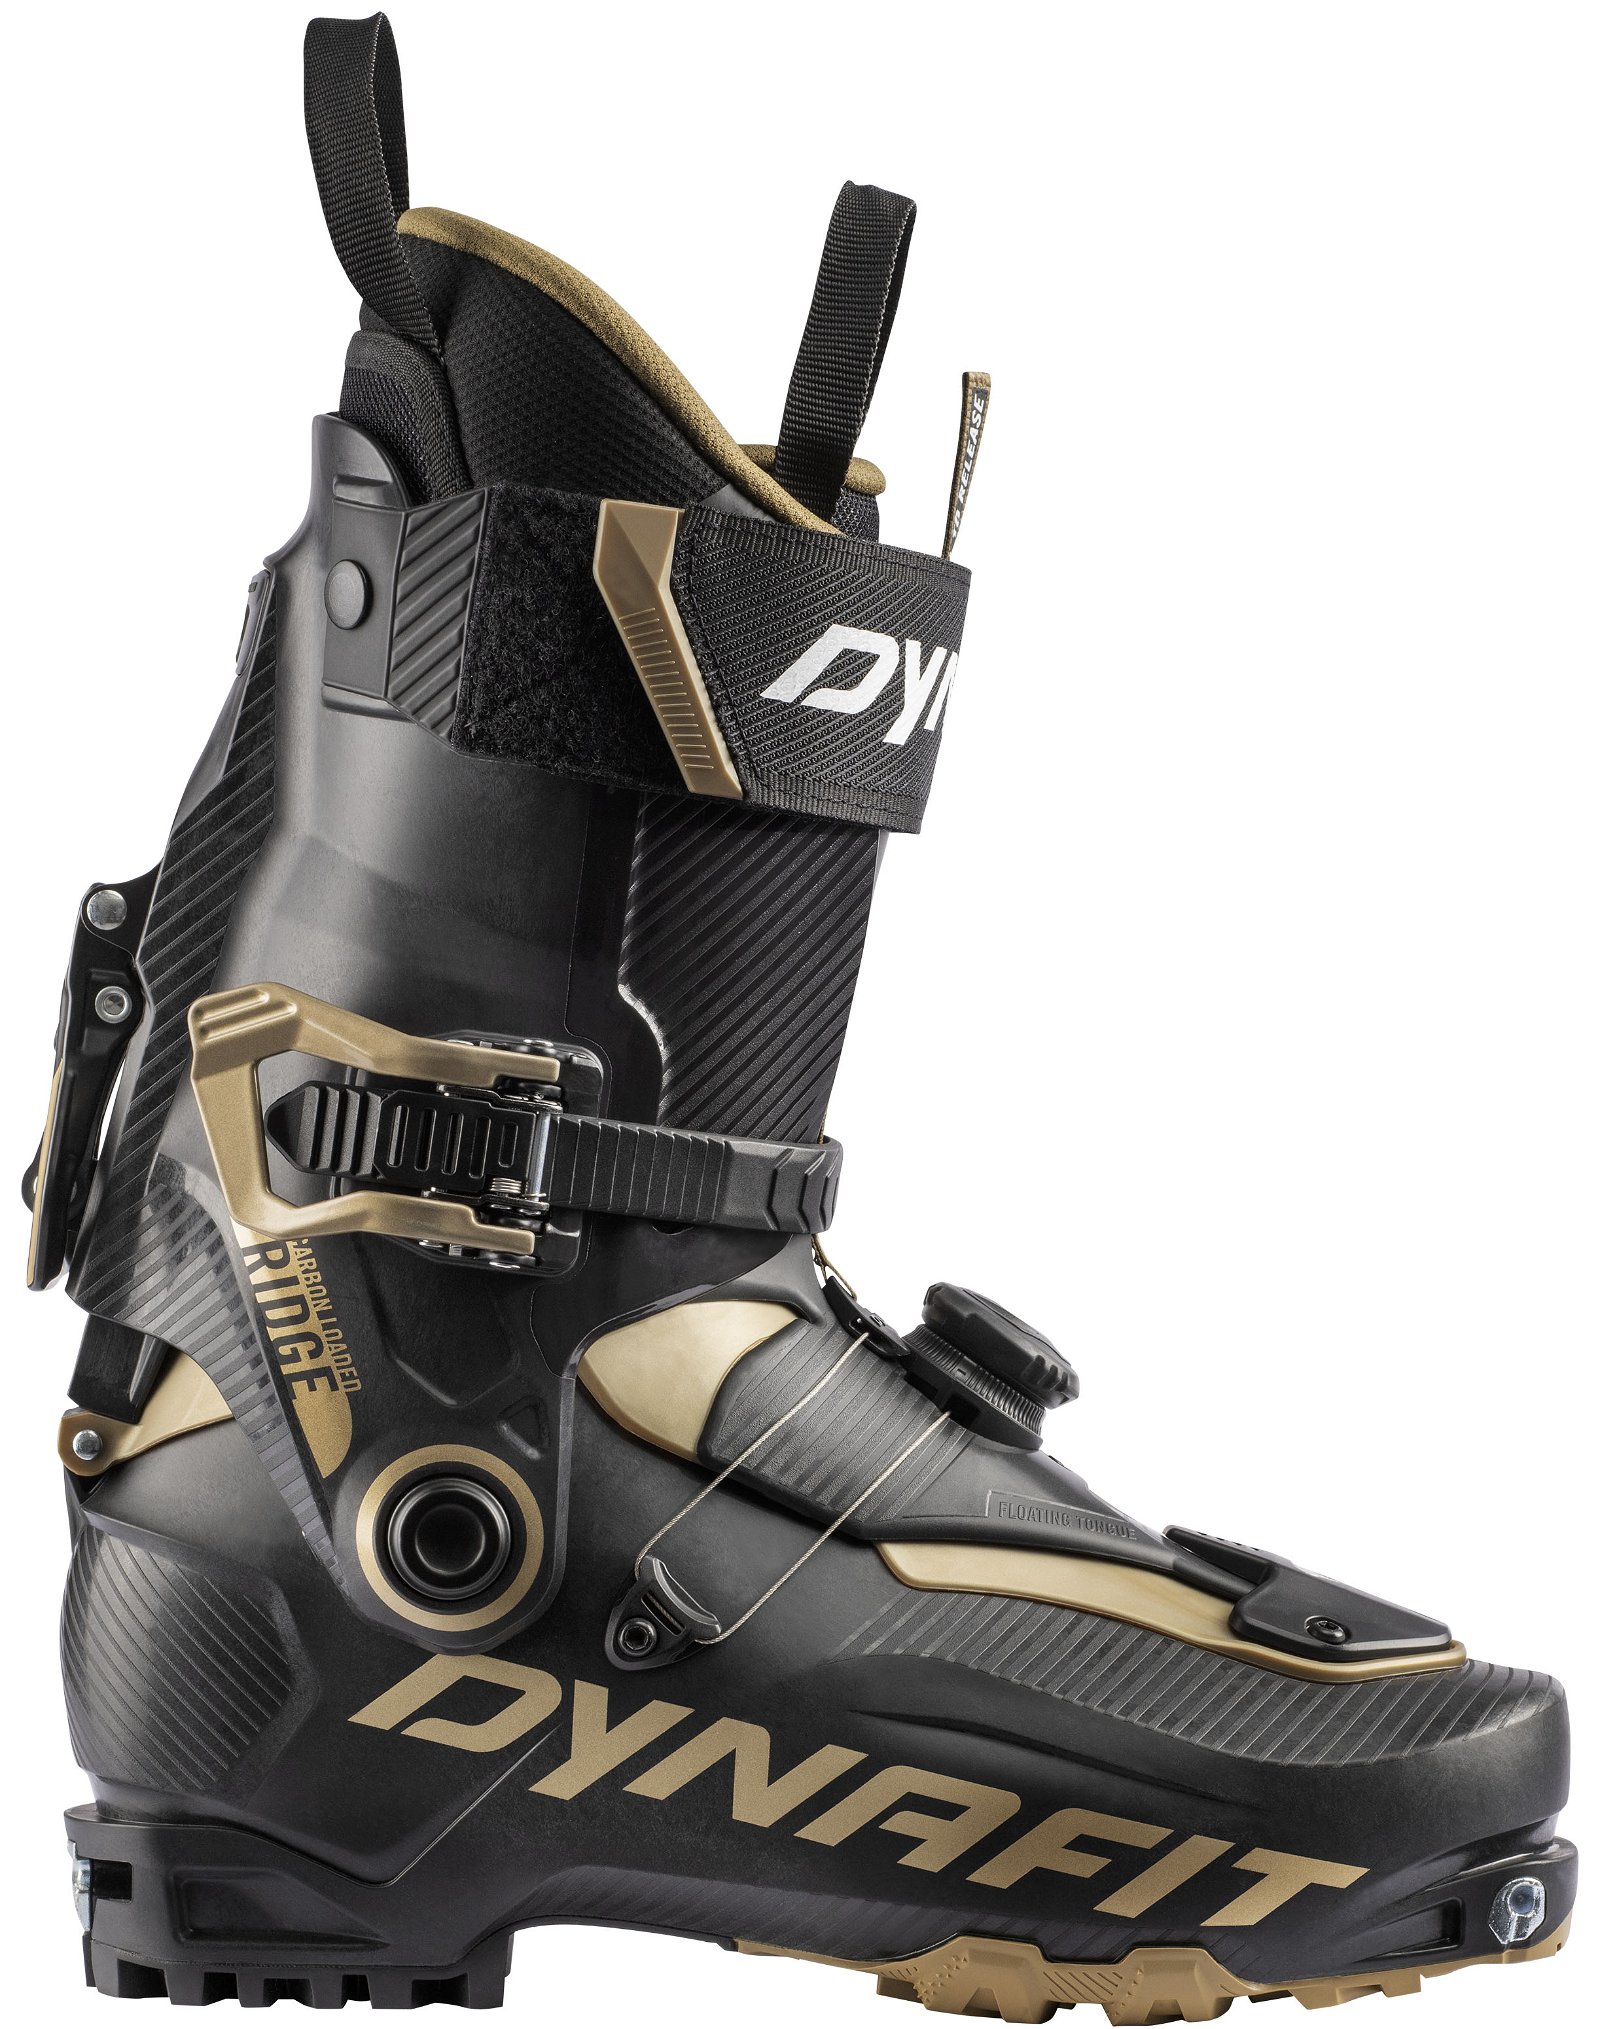 Dynafit Ridge Pro Boot